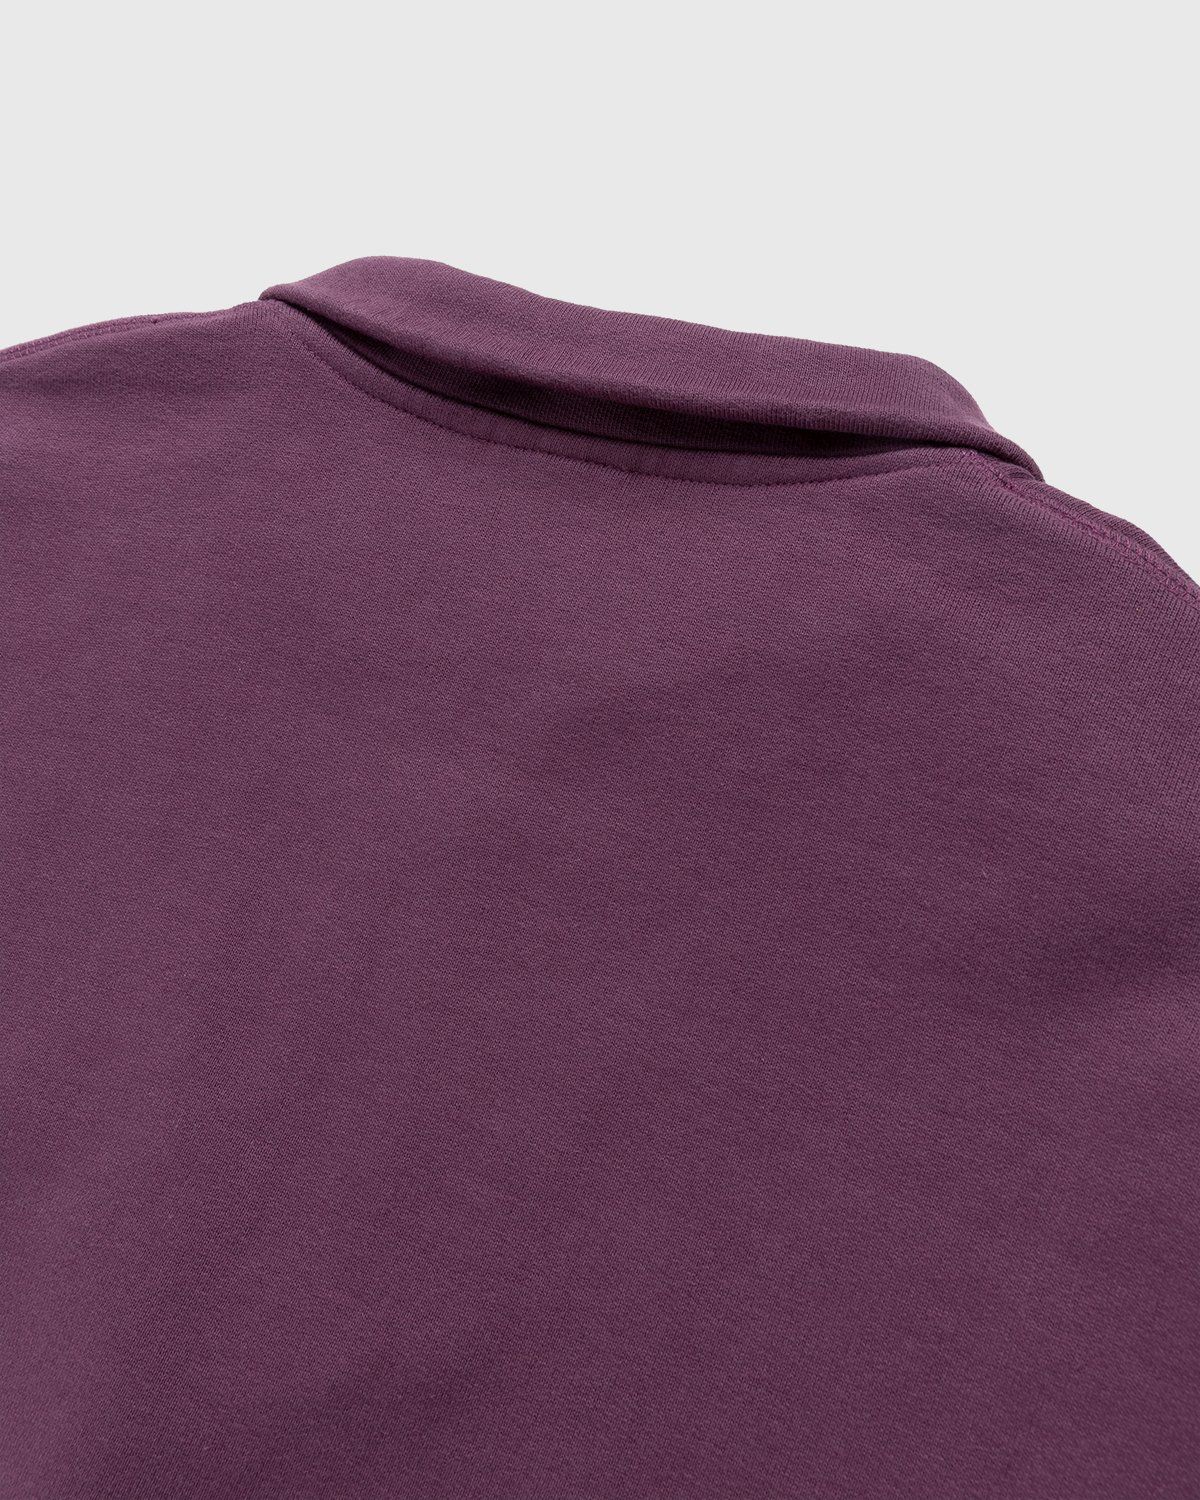 Highsnobiety – Zip Mock Neck Staples Fleece Purple - Zip-Ups - Purple - Image 3